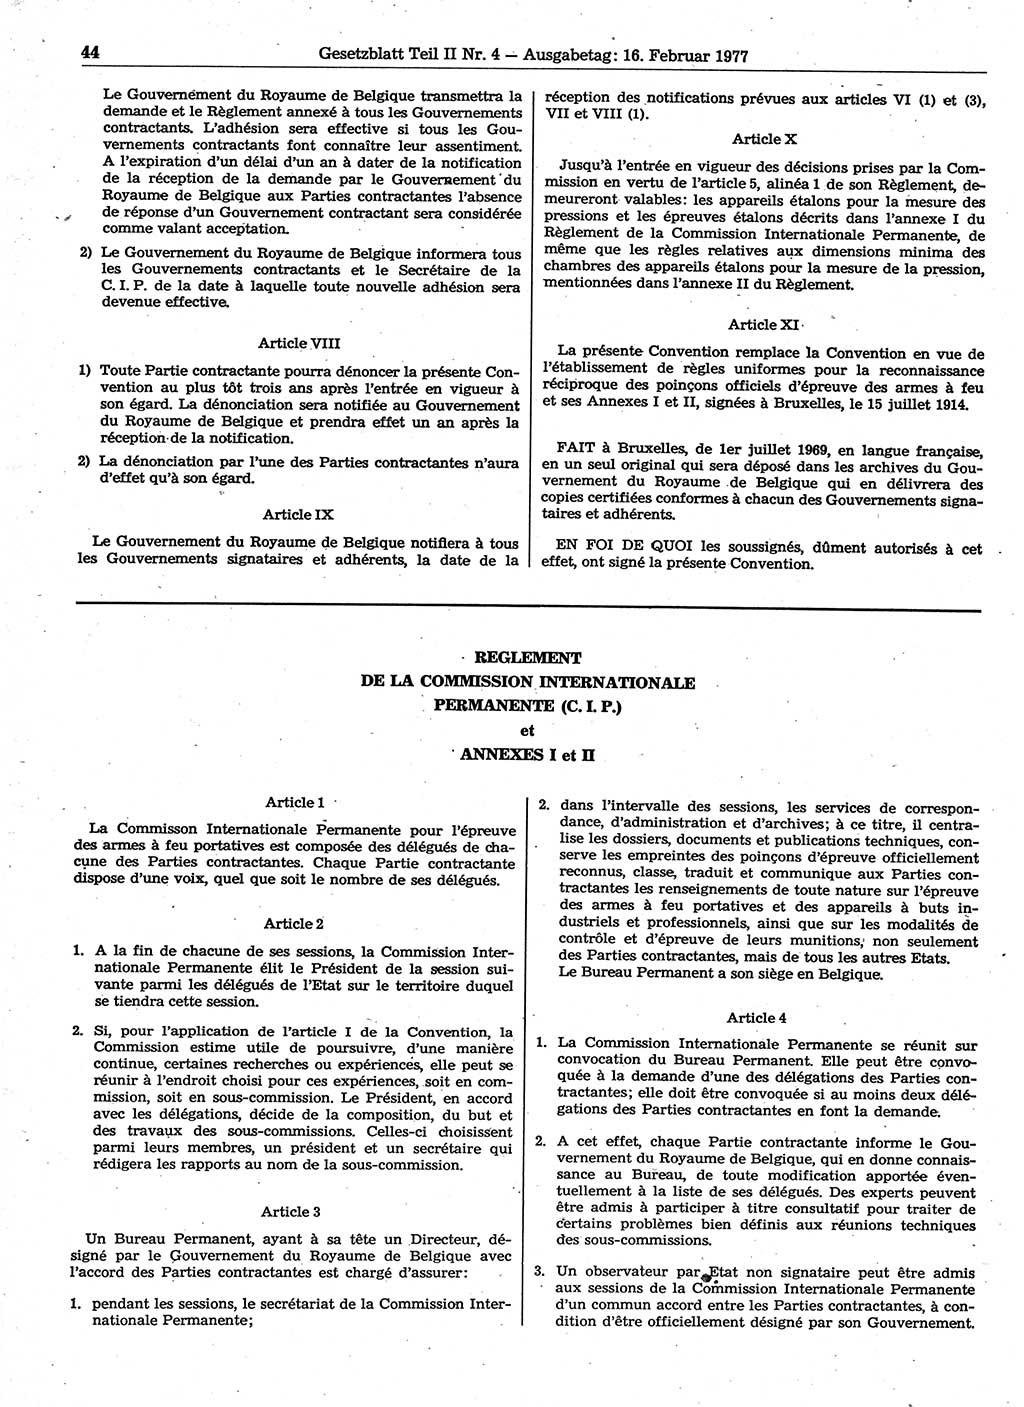 Gesetzblatt (GBl.) der Deutschen Demokratischen Republik (DDR) Teil ⅠⅠ 1977, Seite 44 (GBl. DDR ⅠⅠ 1977, S. 44)